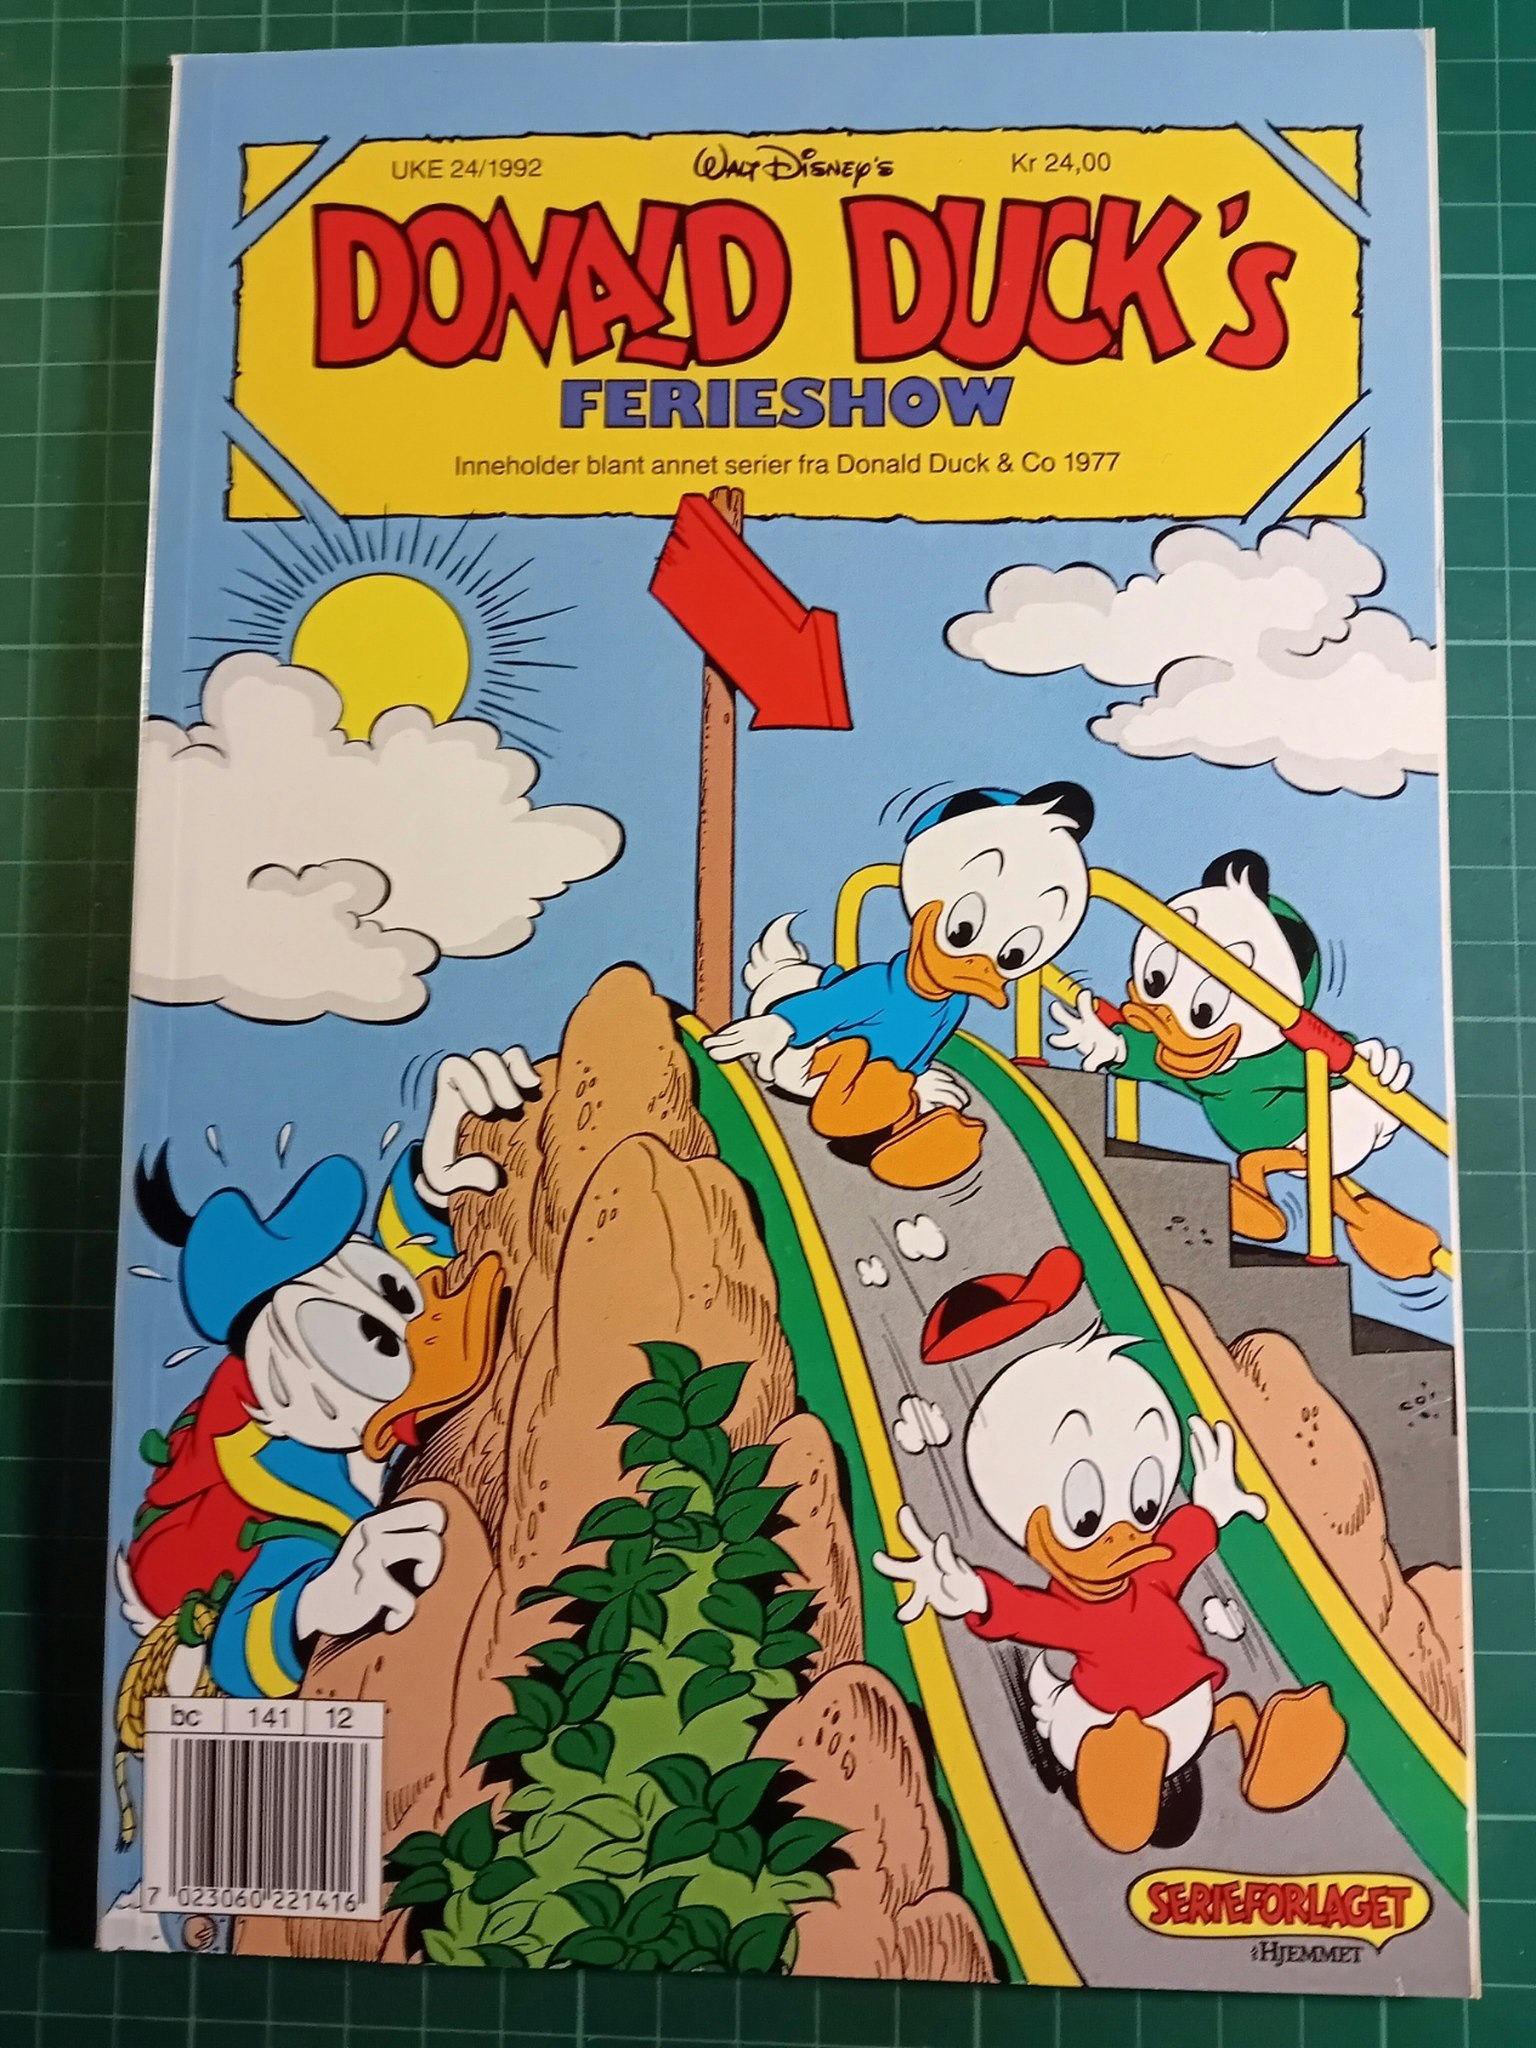 Donald Ducks 1992 Ferie show